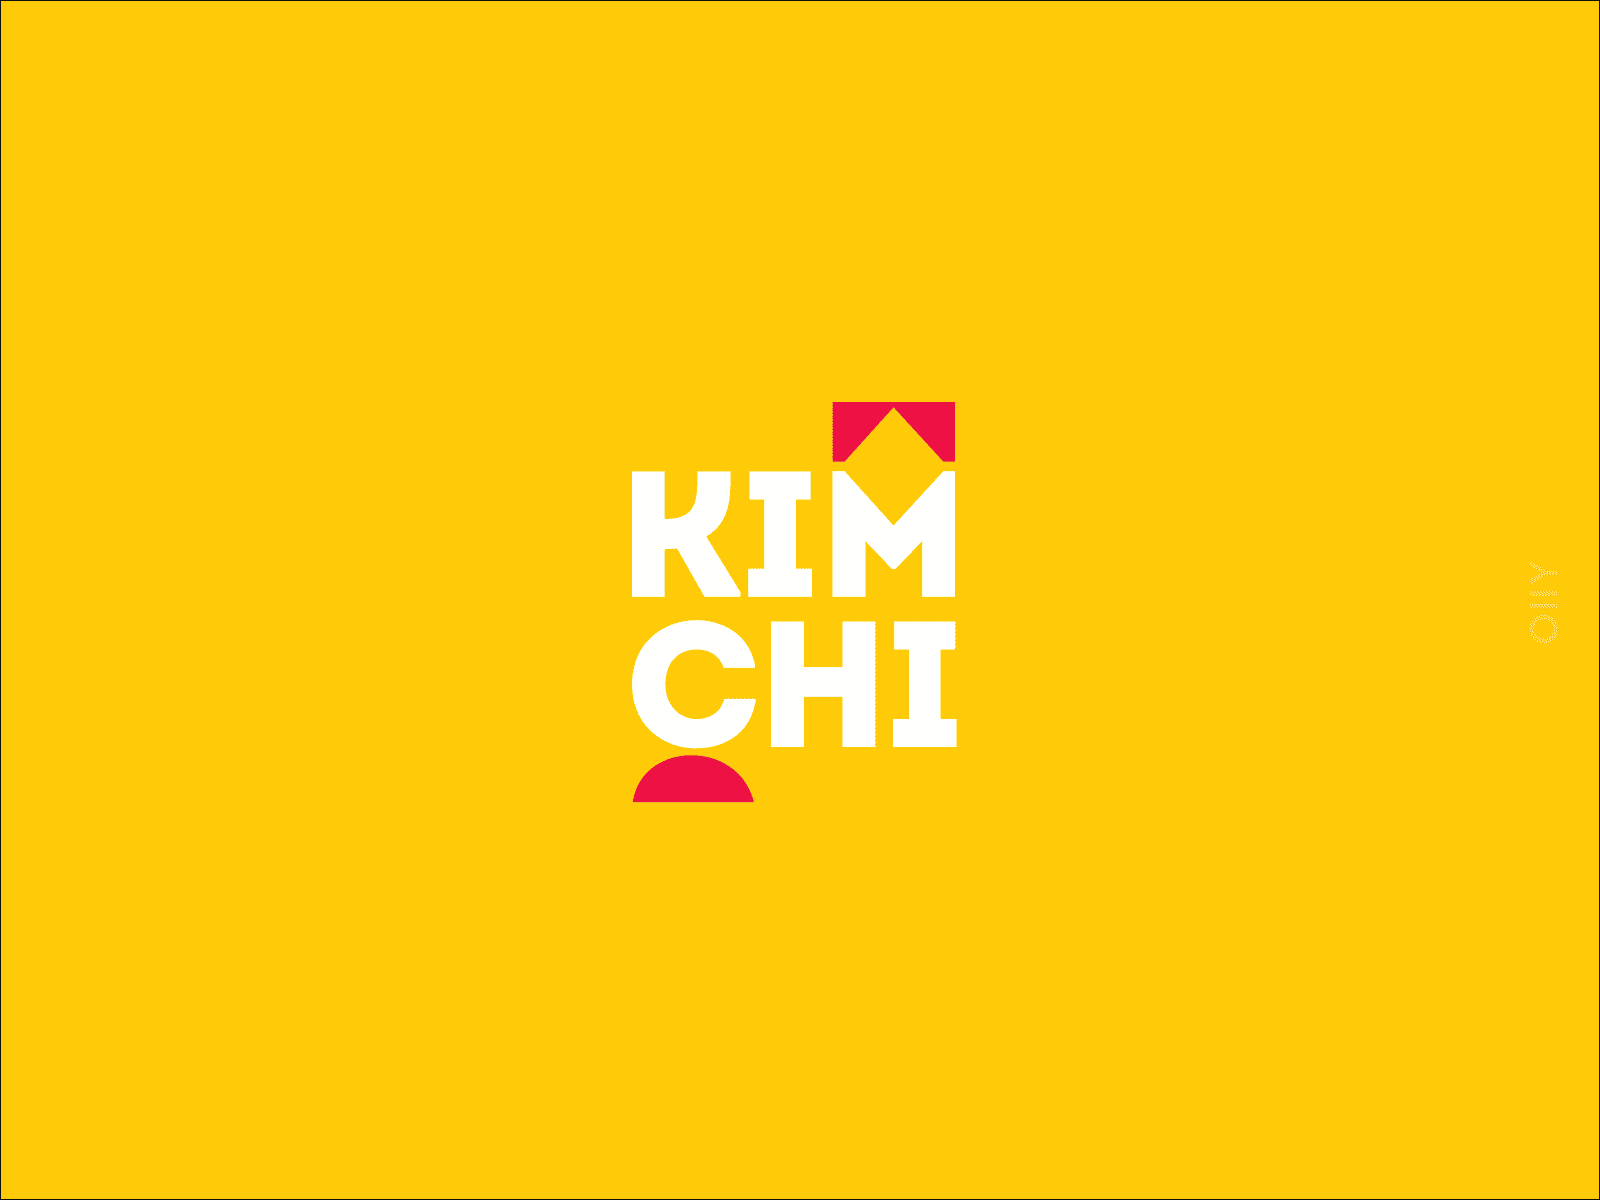 "Kimchi" korean restaurant | branding